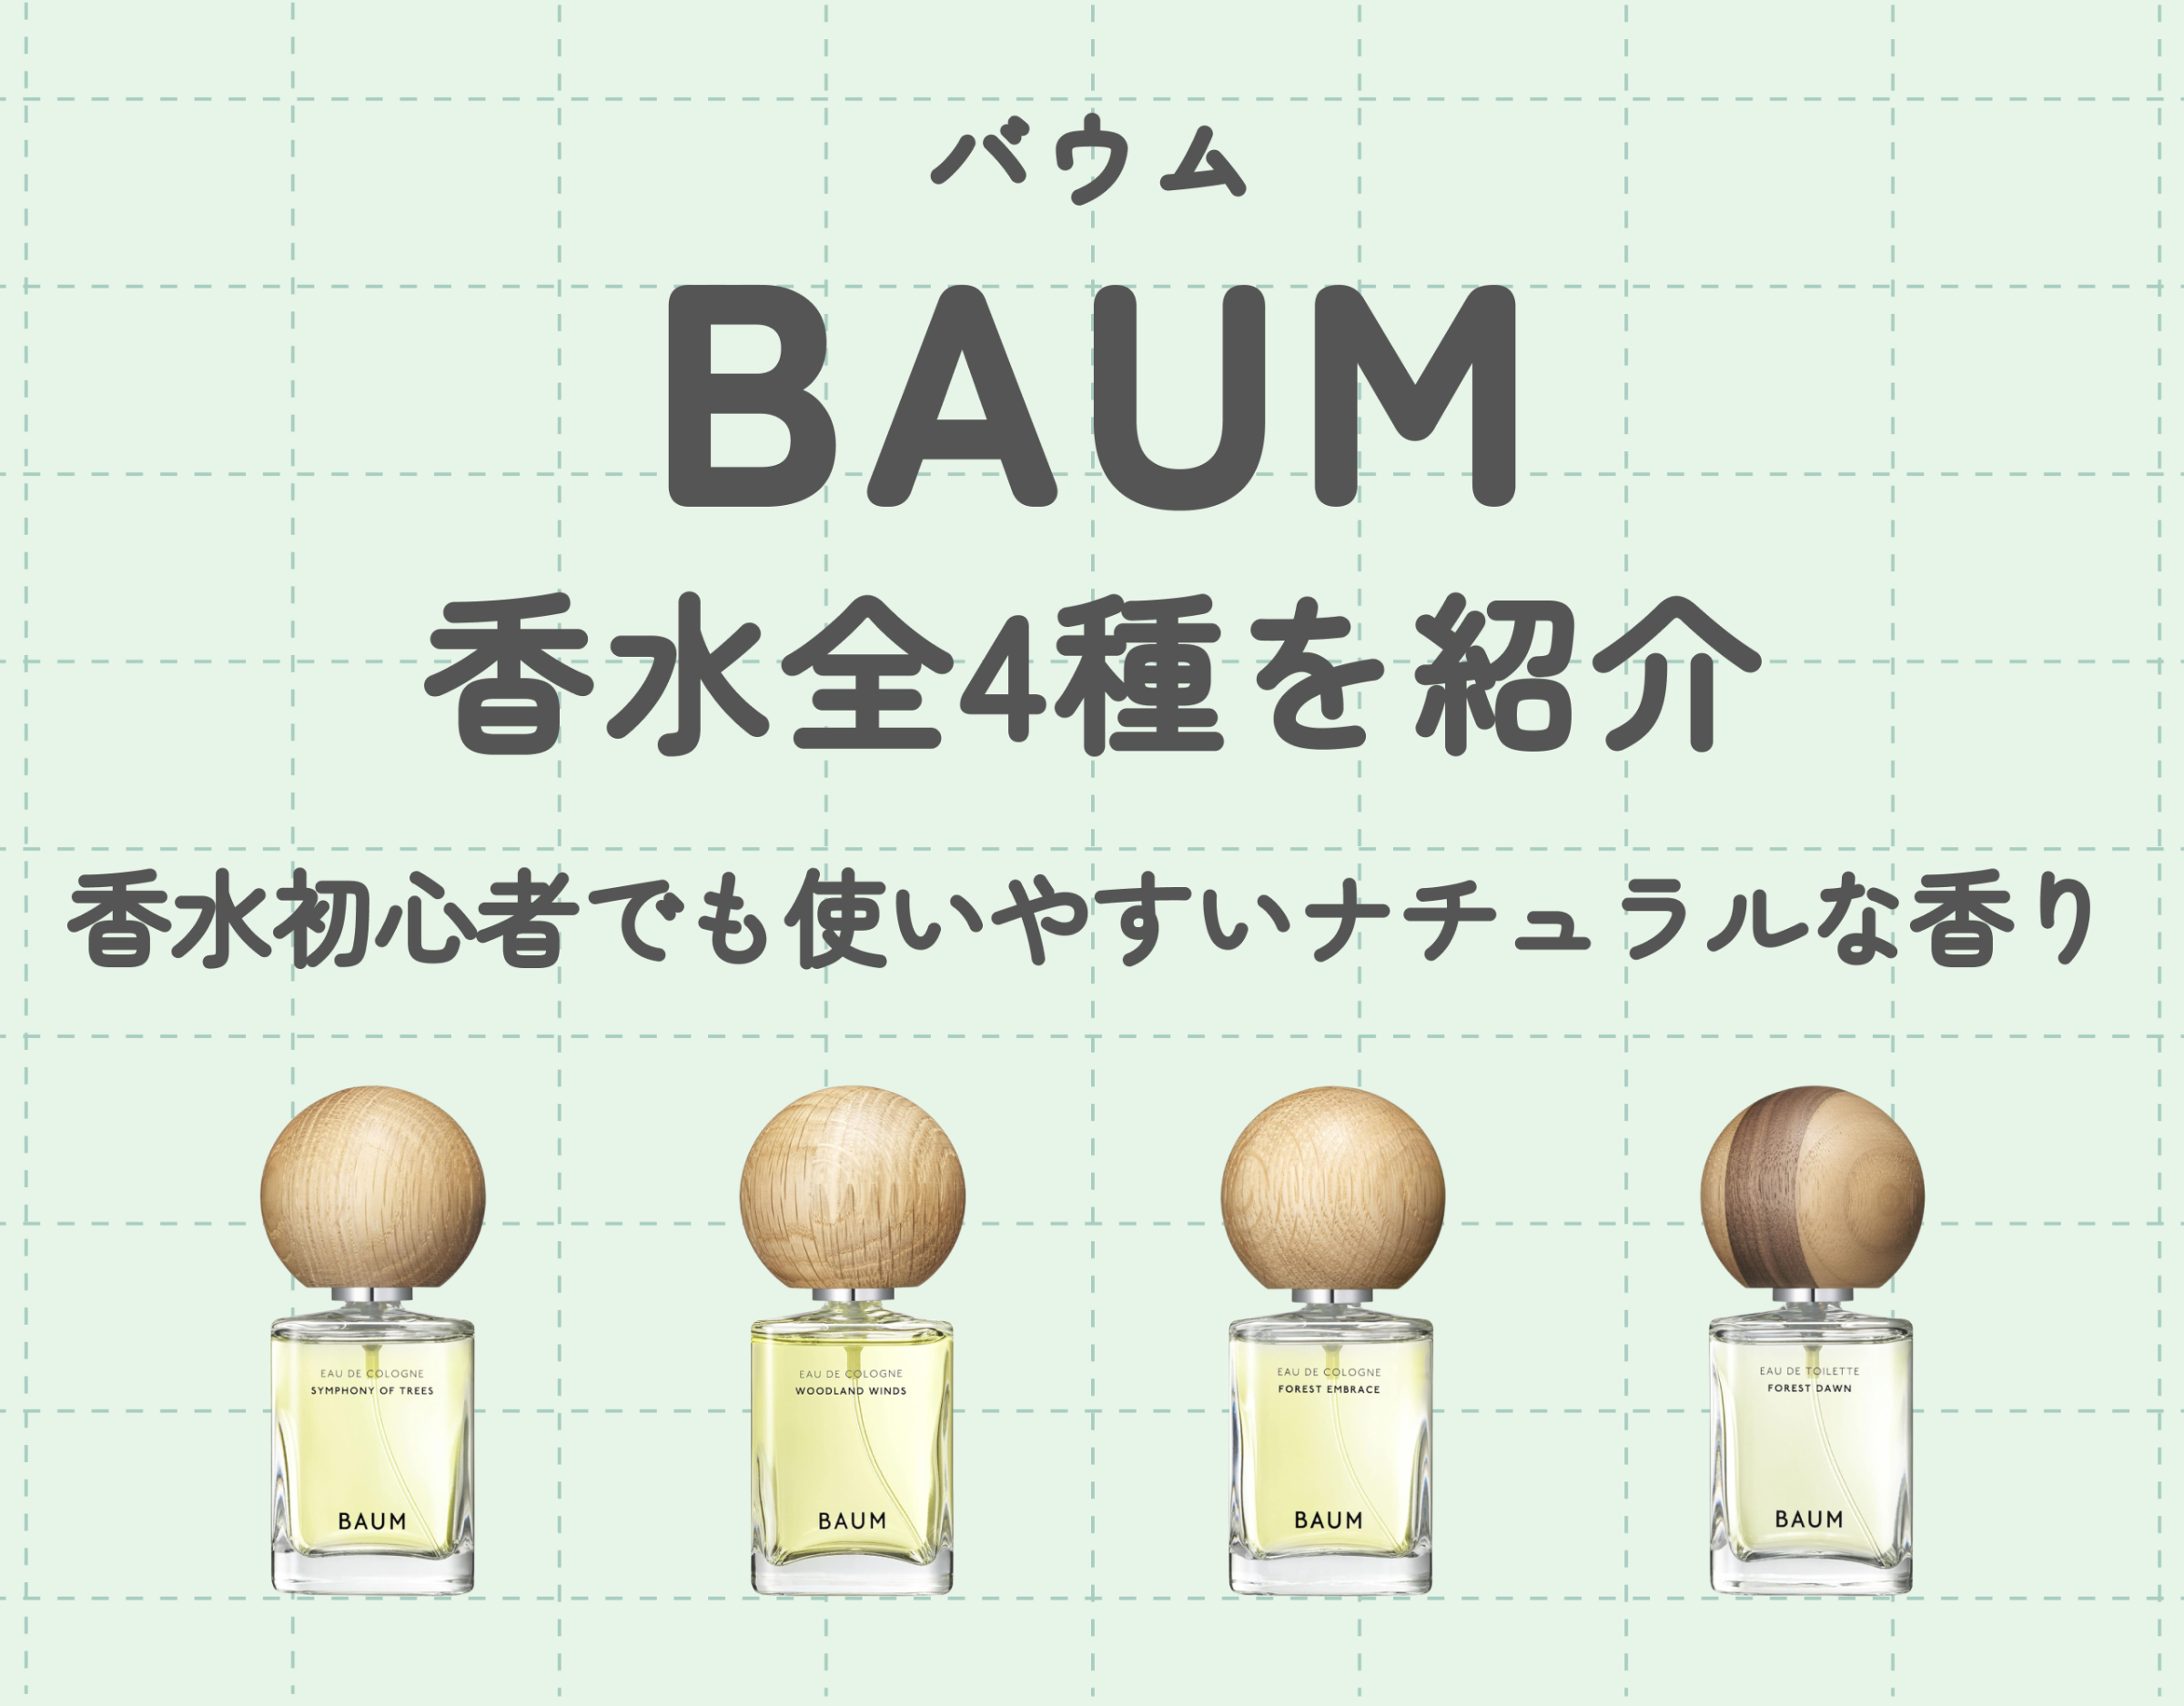 BAUM バウム オーデコロン 各1ml 3種類セット - 香水(ユニセックス)